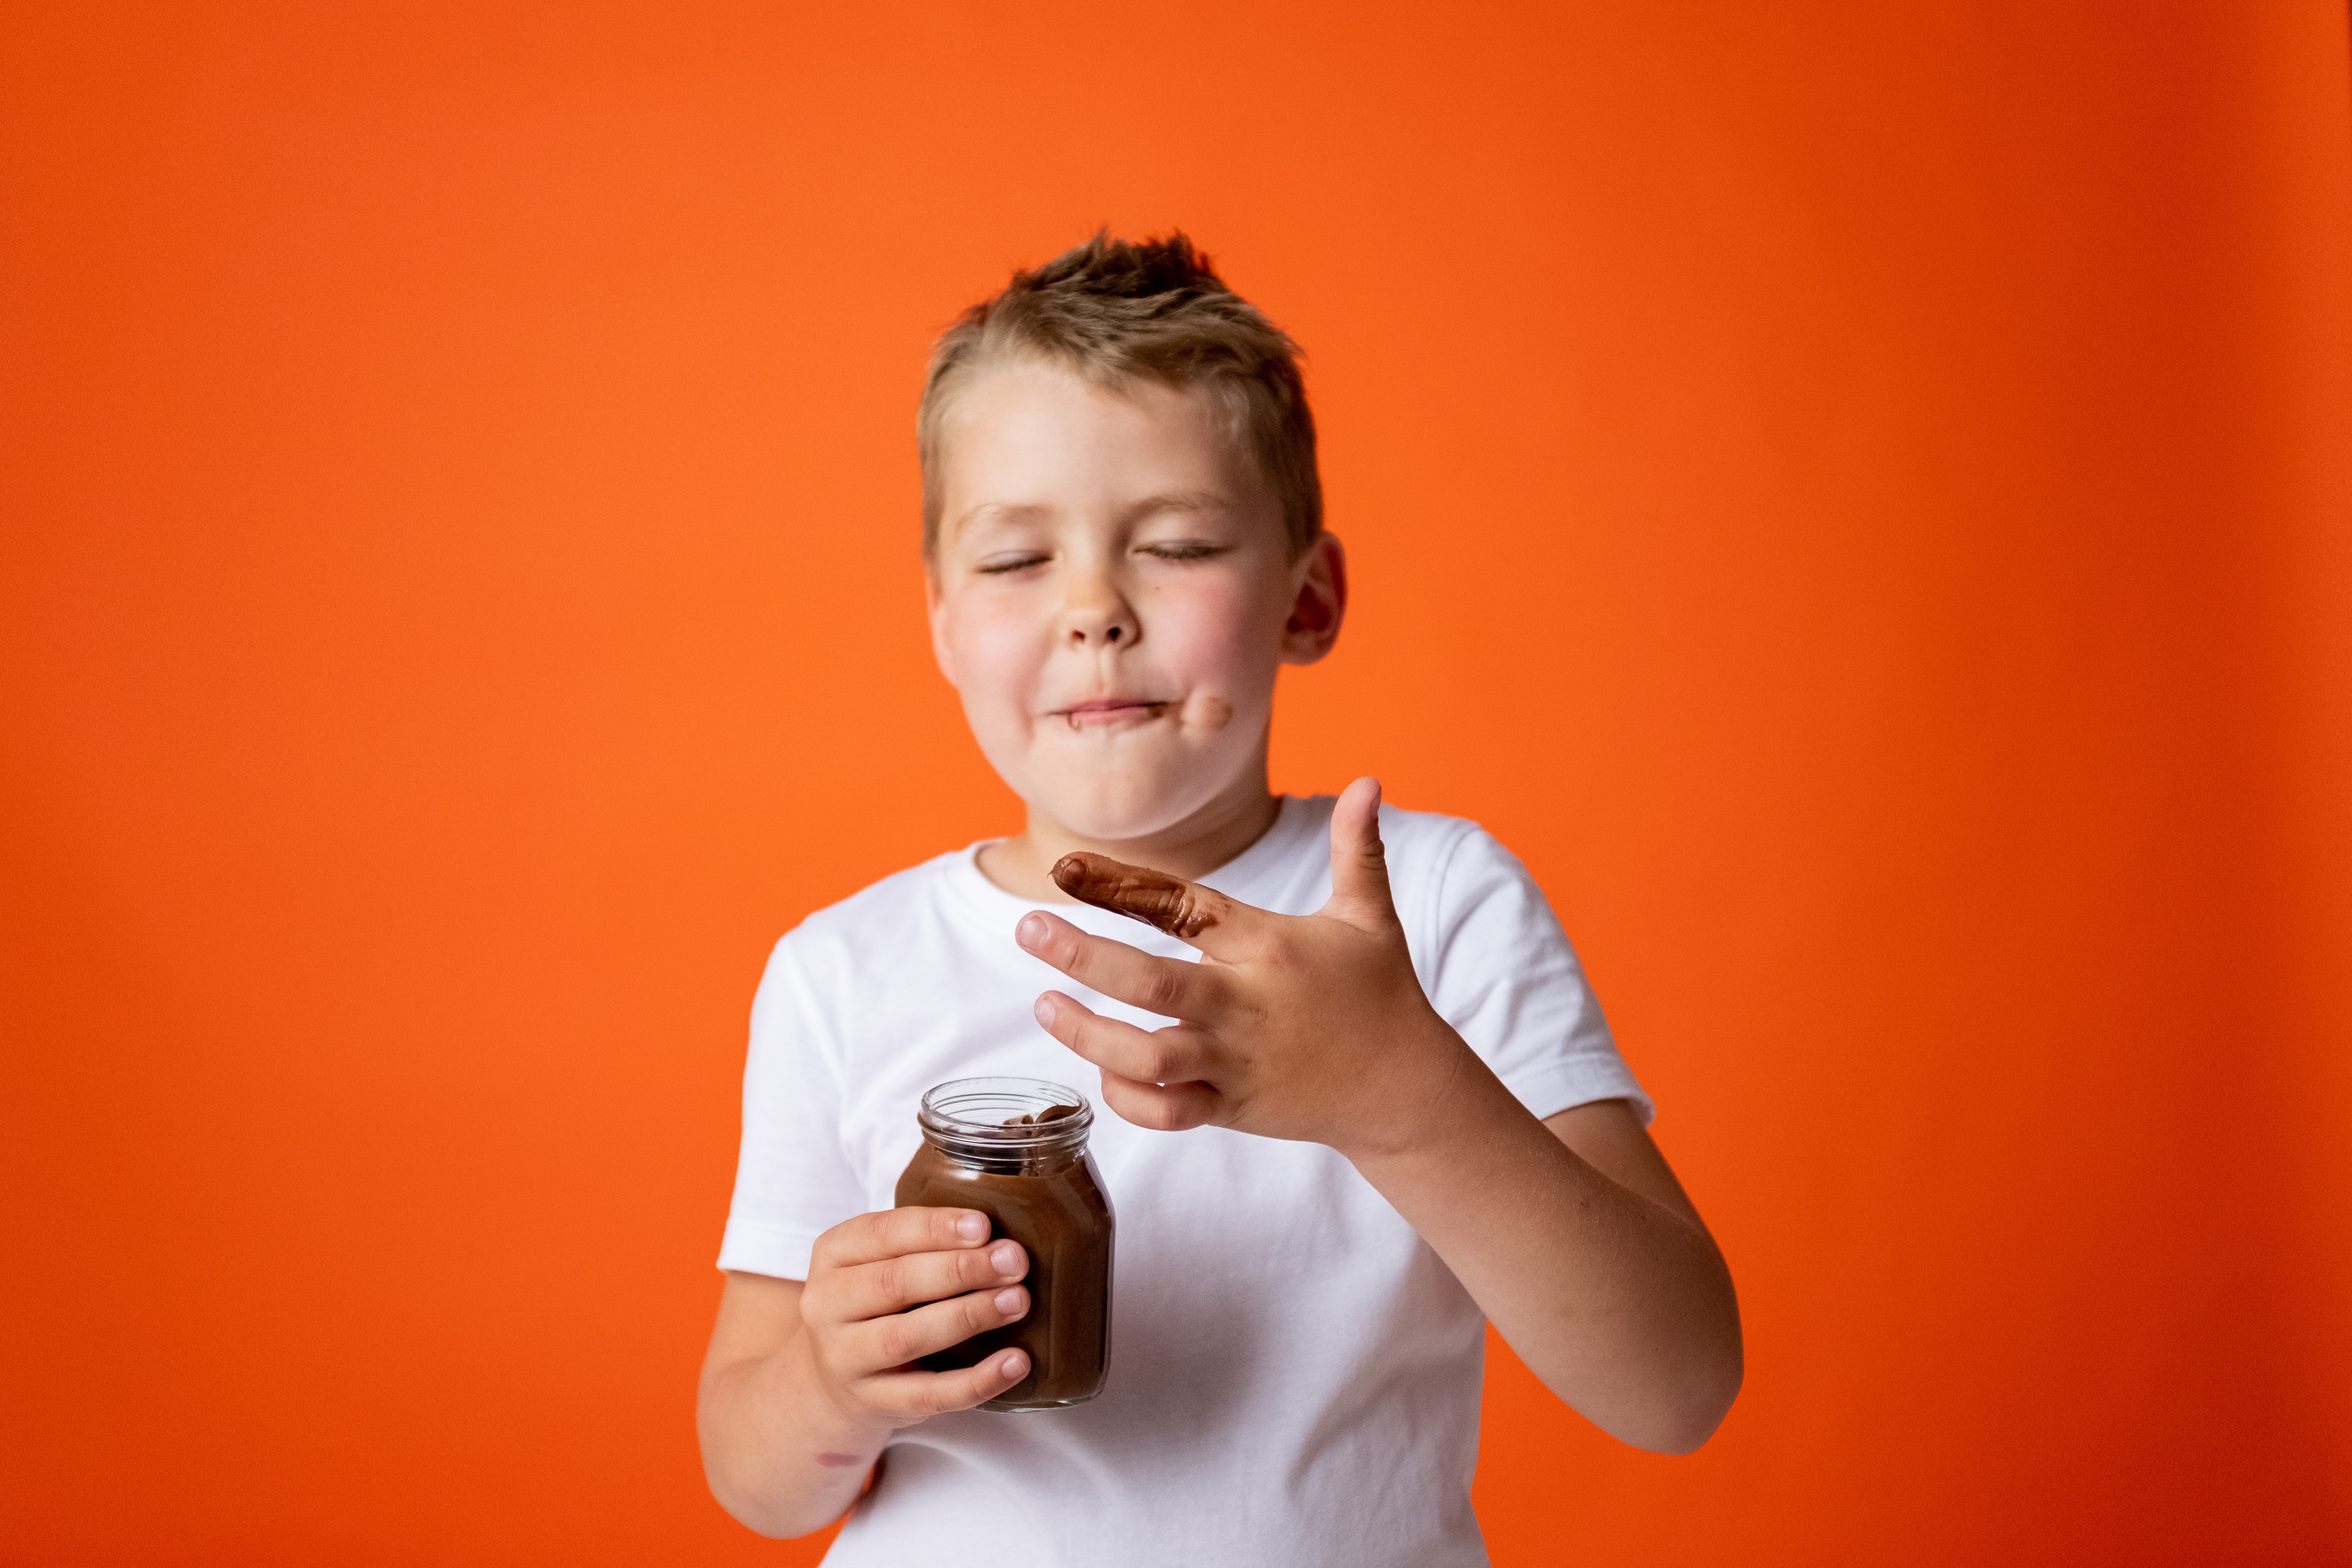 Anak dengan alergi makanan tetap membutuhkan asupan gizi dan serat seimbang. (Sumber gambar: Cottonbro)